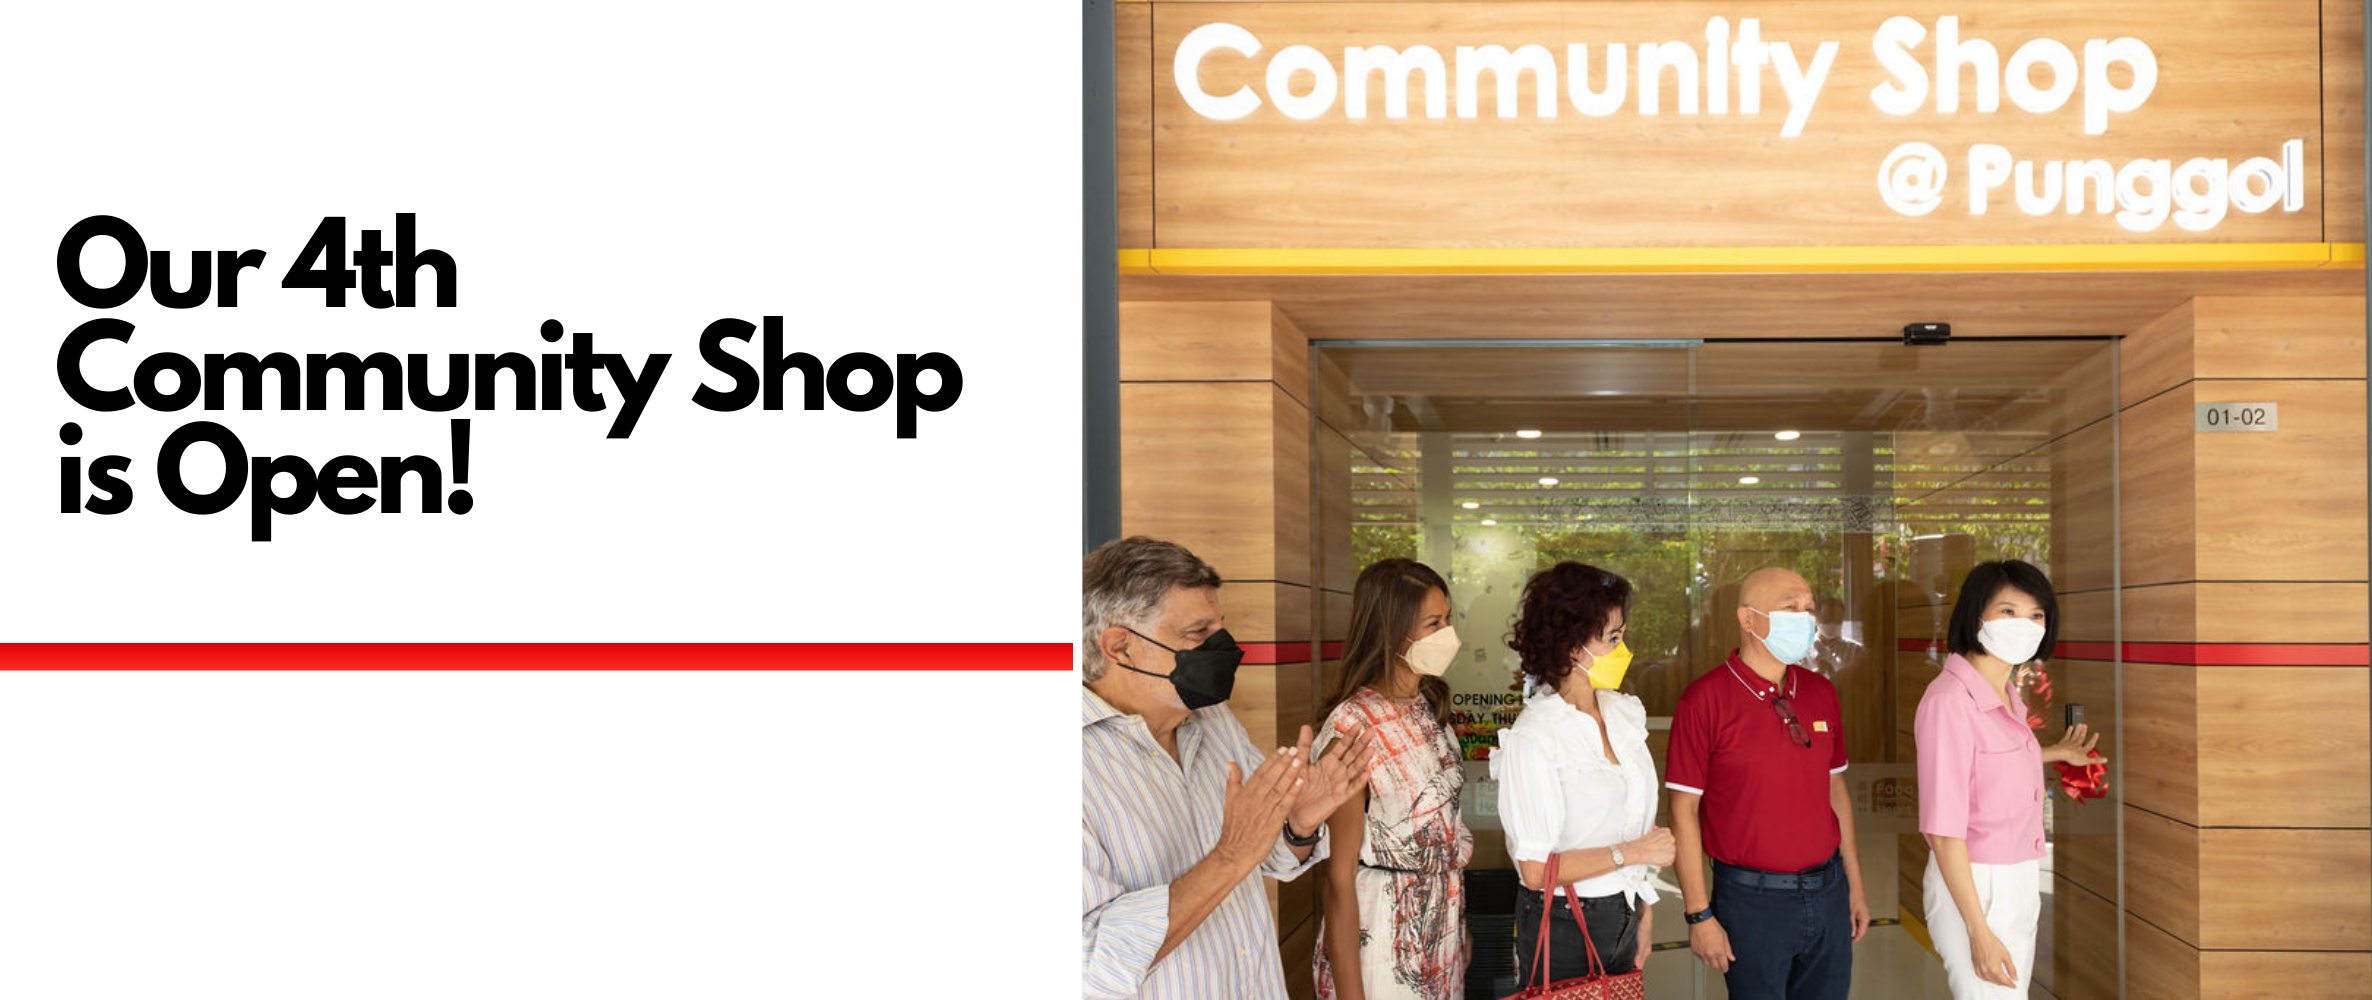 Community Shop @ Punggol Is Open!